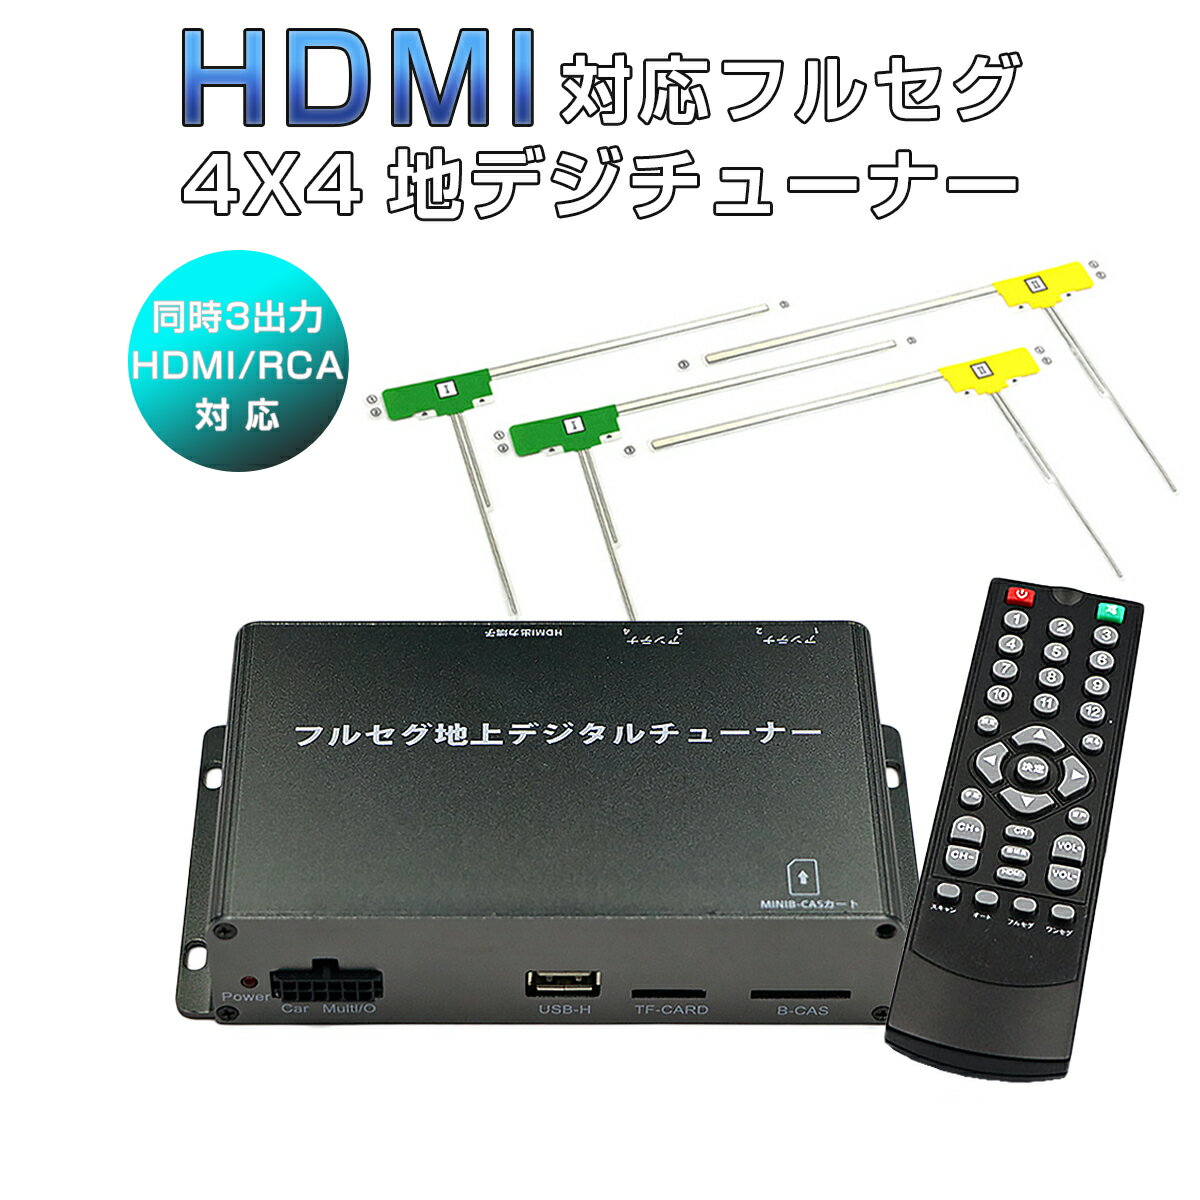 【仕様】・ハイビジョンデジタルTV信号受信感度：95db・標準TV信号受信感度：85db・4x4：4チューナー x 4アンテナ・HDMI出力対応・受信可能最高速度:150km/h・自動スキャン・字幕表示対応・アンテナ端子：SMA端子・出力：HDMI 1系統 / RCA 2系統・USBメモリー/SDカードでのアップデート対応・電源：DC12V/24V・メニュー言語：日本語/英語・サイズ：155mm x 32mm x 87mm・重量：144g【特徴】【4チューナー x 4アンテナ】車載チューナー最高クラスの4チューナー搭載で、4つのチューナー間で不足している映像情報を補完、合成して1つのクリアな映像・音質を再現します。また4つのアンテナであらゆる方向からの電波を捉える事ができ、受信エリアも広範囲なので、安定した鮮明なフルセグ映像をご覧頂けます。【HDMI ハイビジョン映像】HDMI端子搭載でデジタル出力が可能に。今までのワンセグチューナーとは一線を画す高精細な映像をご覧いただけます。地デジ本来の鮮明な画質を車内でお楽しみください。【受信可能最高速度:150km/h】最高速度150kmまで正常にハイビジョンTV信号を受信することが可能です。【HDMI/RCA同時3出力】複数のモニターに映像を分配する際、このフルセグチューナーでは出力端子を3つ(HDMI出力×1、RCA出力×2)搭載しているので、分配器を通さずに3出力同時に映像を流すことが可能です。【フルセグ・ワンセグ高速自動切替】電波状態が良好な場所では高画質のフルセグ、受信電波の弱い場所ではワンセグに瞬時に自動切替が行われるので途切れることもありません。ストレスフリーで車内でのテレビをお楽しみ頂けます。【エリア自動切替】車移動中に他の放送エリアに移動した場合でも、その都度チャンネルをスキャンすることなく、チューナーが現在地の放送局を自動的に再スキャンし、現地エリアの放送局に切り替えます。この地デジチューナーは常に電波の受信状態を測定していますので、電波が途切れた場合、受信可能な周波数を自動的にスキャンし、安定した受信環境を届けます。【高感度フィルムアンテナ】感度を大幅にアップさせた専用のL型フィルムアンテナが付属。小型なので見栄えもよく省スペースで、貼り付けやすいので簡単に設置できます。フロントガラスでもリアガラスでも、どちらにも貼り付けることができます。【全車種対応】電圧12V/24V対応なので普通車だけではなく、トラックやバスなど大型車両にも対応しています。【色んなモニターに接続可能】カーナビやヘッドレストモニター、スリップダウンモニター、バックミラーモニター、オンダッシュモニター等、モニターサイズが4.3インチ以上のモニターであれば接続可能です。【セット内容】・地上デジタルTVチューナー本体x1・リモコンx1・リモコン受光部x1 (3m)・マルチ電源ケーブルx1 (50cm)・フィルムアンテナセット(フロント用)x2 (3m)・フィルムアンテナセット(リア用)x2 (5m)・miniB-CASカードx1【注意事項】・加工、取付ミスの場合は、いかなる理由でも返品・交換はできかねます。・製造ロットにより、予告なく外観・色に変更する場合がございます。・輸入品ですので希にわずかのキズ、箱の破損がありますがご了承ください。【仕様】・ハイビジョンデジタルTV信号受信感度：95db・標準TV信号受信感度：85db・4x4：4チューナー x 4アンテナ・HDMI出力対応・受信可能最高速度:150km/h・自動スキャン・字幕表示対応・アンテナ端子：SMA端子・出力：HDMI 1系統 / RCA 2系統・USBメモリー/SDカードでのアップデート対応・電源：DC12V/24V・メニュー言語：日本語/英語・サイズ：155mm x 32mm x 87mm・重量：144g【特徴】【4チューナー x 4アンテナ】車載チューナー最高クラスの4チューナー搭載で、4つのチューナー間で不足している映像情報を補完、合成して1つのクリアな映像・音質を再現します。また4つのアンテナであらゆる方向からの電波を捉える事ができ、受信エリアも広範囲なので、安定した鮮明なフルセグ映像をご覧頂けます。【HDMI ハイビジョン映像】HDMI端子搭載でデジタル出力が可能に。今までのワンセグチューナーとは一線を画す高精細な映像をご覧いただけます。地デジ本来の鮮明な画質を車内でお楽しみください。【受信可能最高速度:150km/h】最高速度150kmまで正常にハイビジョンTV信号を受信することが可能です。【HDMI/RCA同時3出力】複数のモニターに映像を分配する際、このフルセグチューナーでは出力端子を3つ(HDMI出力×1、RCA出力×2)搭載しているので、分配器を通さずに3出力同時に映像を流すことが可能です。【フルセグ・ワンセグ高速自動切替】電波状態が良好な場所では高画質のフルセグ、受信電波の弱い場所ではワンセグに瞬時に自動切替が行われるので途切れることもありません。ストレスフリーで車内でのテレビをお楽しみ頂けます。【エリア自動切替】車移動中に他の放送エリアに移動した場合でも、その都度チャンネルをスキャンすることなく、チューナーが現在地の放送局を自動的に再スキャンし、現地エリアの放送局に切り替えます。この地デジチューナーは常に電波の受信状態を測定していますので、電波が途切れた場合、受信可能な周波数を自動的にスキャンし、安定した受信環境を届けます。【高感度フィルムアンテナ】感度を大幅にアップさせた専用のL型フィルムアンテナが付属。小型なので見栄えもよく省スペースで、貼り付けやすいので簡単に設置できます。フロントガラスでもリアガラスでも、どちらにも貼り付けることができます。【全車種対応】電圧12V/24V対応なので普通車だけではなく、トラックやバスなど大型車両にも対応しています。【色んなモニターに接続可能】カーナビやヘッドレストモニター、スリップダウンモニター、バックミラーモニター、オンダッシュモニター等、モニターサイズが4.3インチ以上のモニターであれば接続可能です。【セット内容】・地上デジタルTVチューナー本体x1・リモコンx1・リモコン受光部x1 (3m)・マルチ電源ケーブルx1 (50cm)・フィルムアンテナセット(フロント用)x2 (3m)・フィルムアンテナセット(リア用)x2 (5m)・miniB-CASカードx1【注意事項】・加工、取付ミスの場合は、いかなる理由でも返品・交換はできかねます。・製造ロットにより、予告なく外観・色に変更する場合がございます。・輸入品ですので希にわずかのキズ、箱の破損がありますがご了承ください。